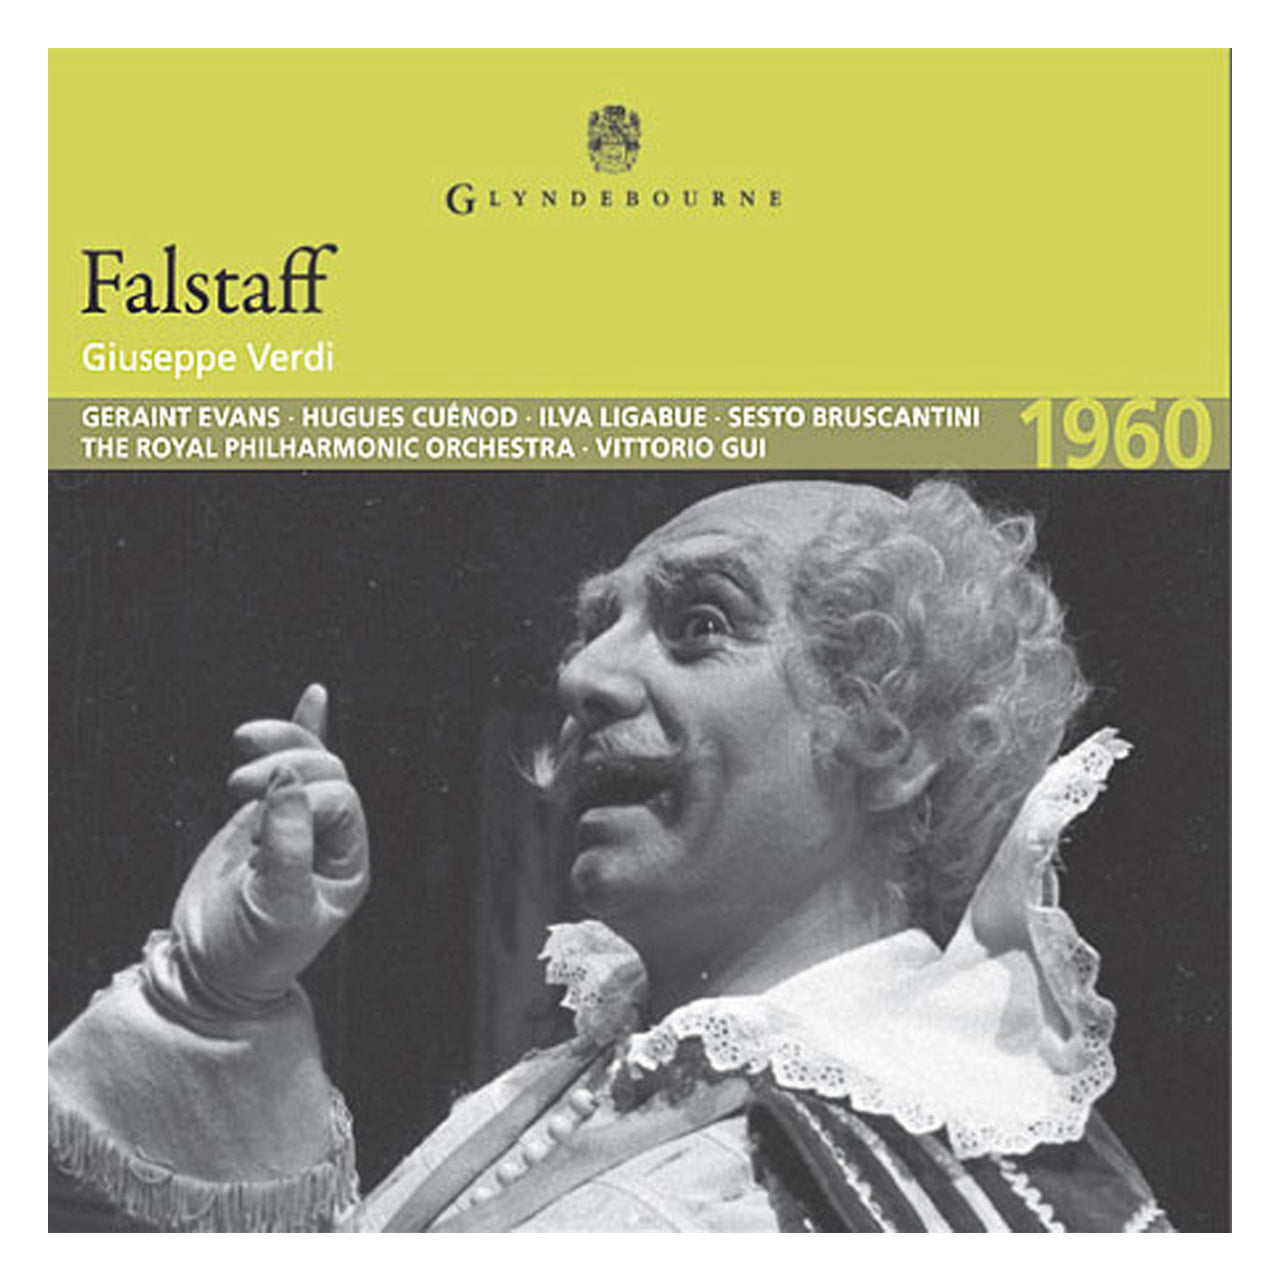 Falstaff CD 1960 Glyndebourne Shop